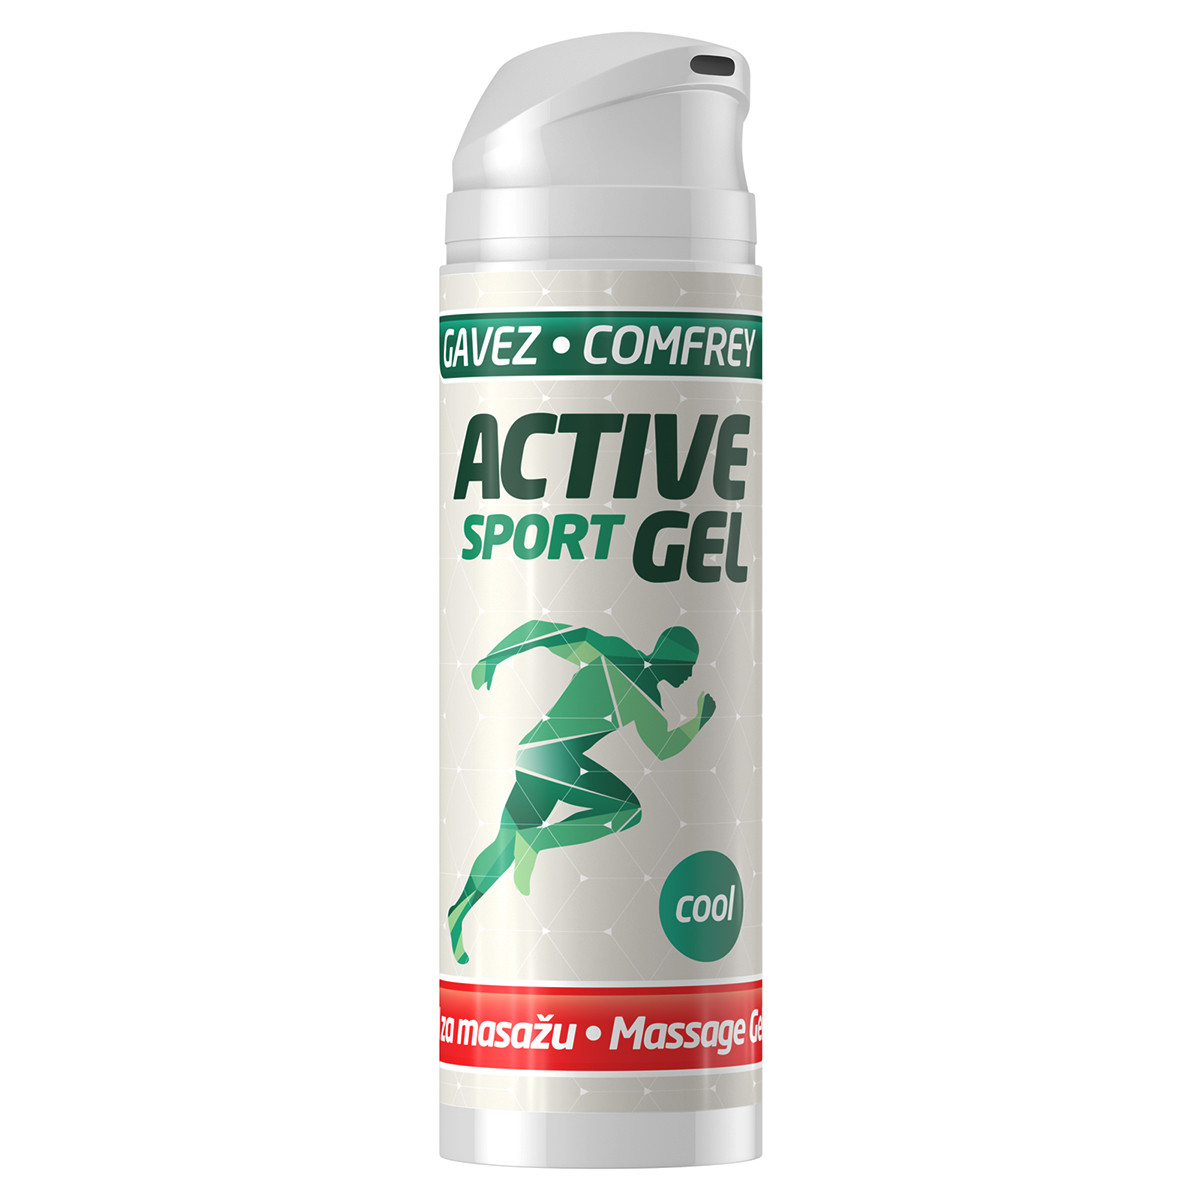 Active sport gel 